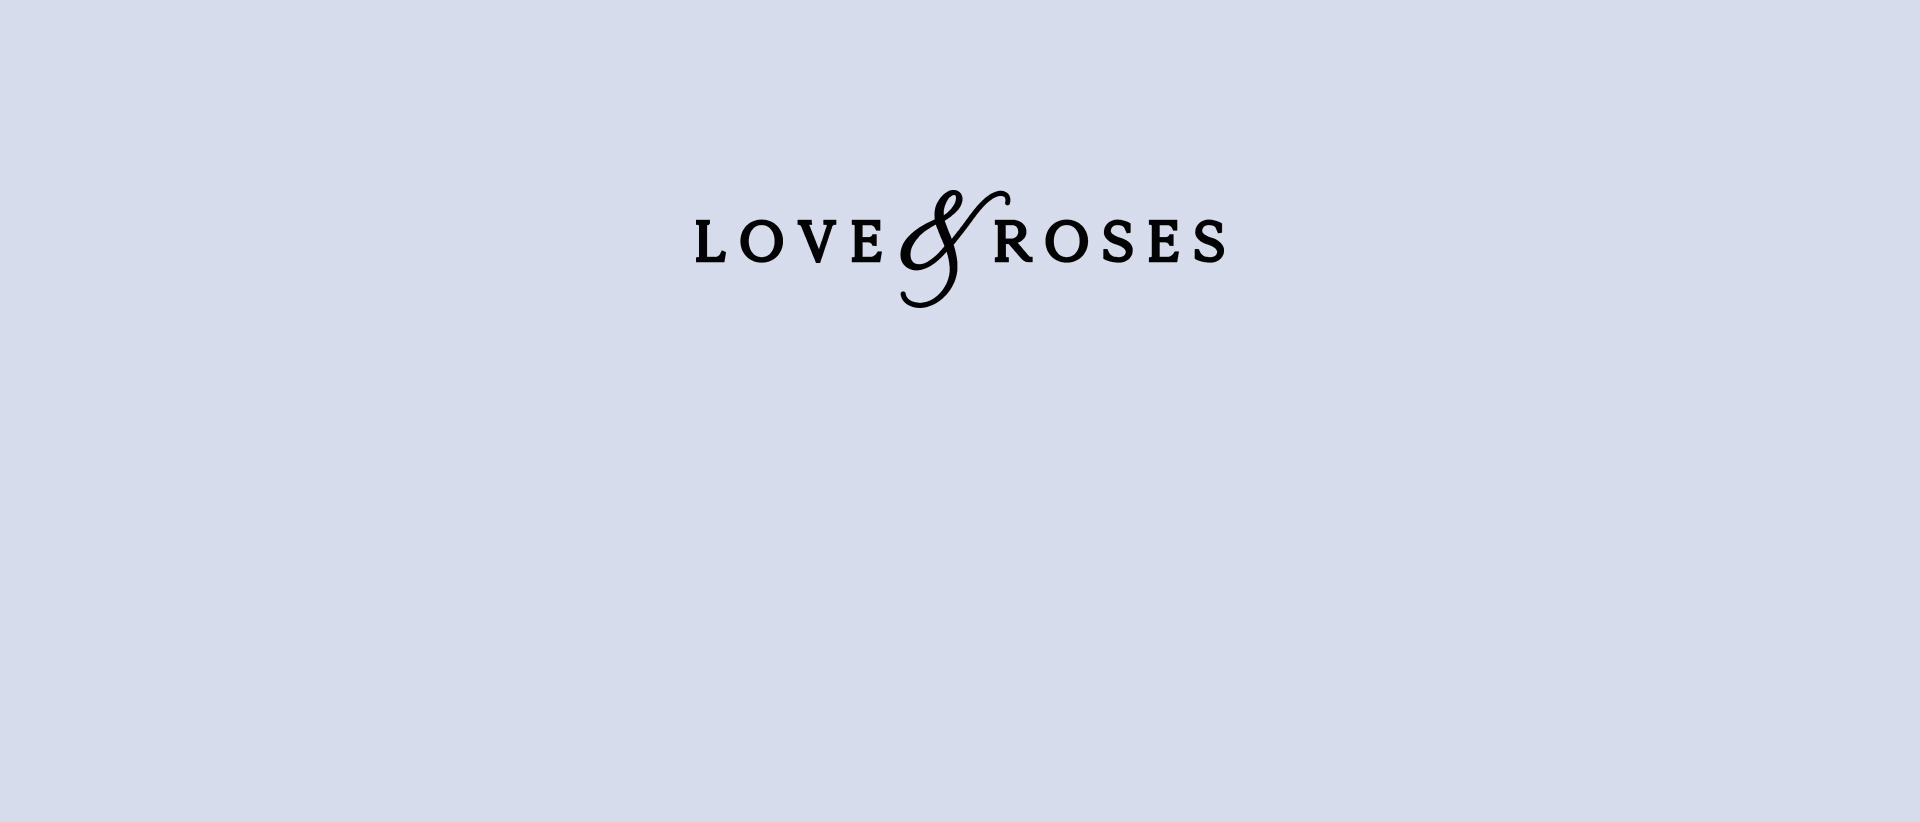 Love & Roses Banner bg